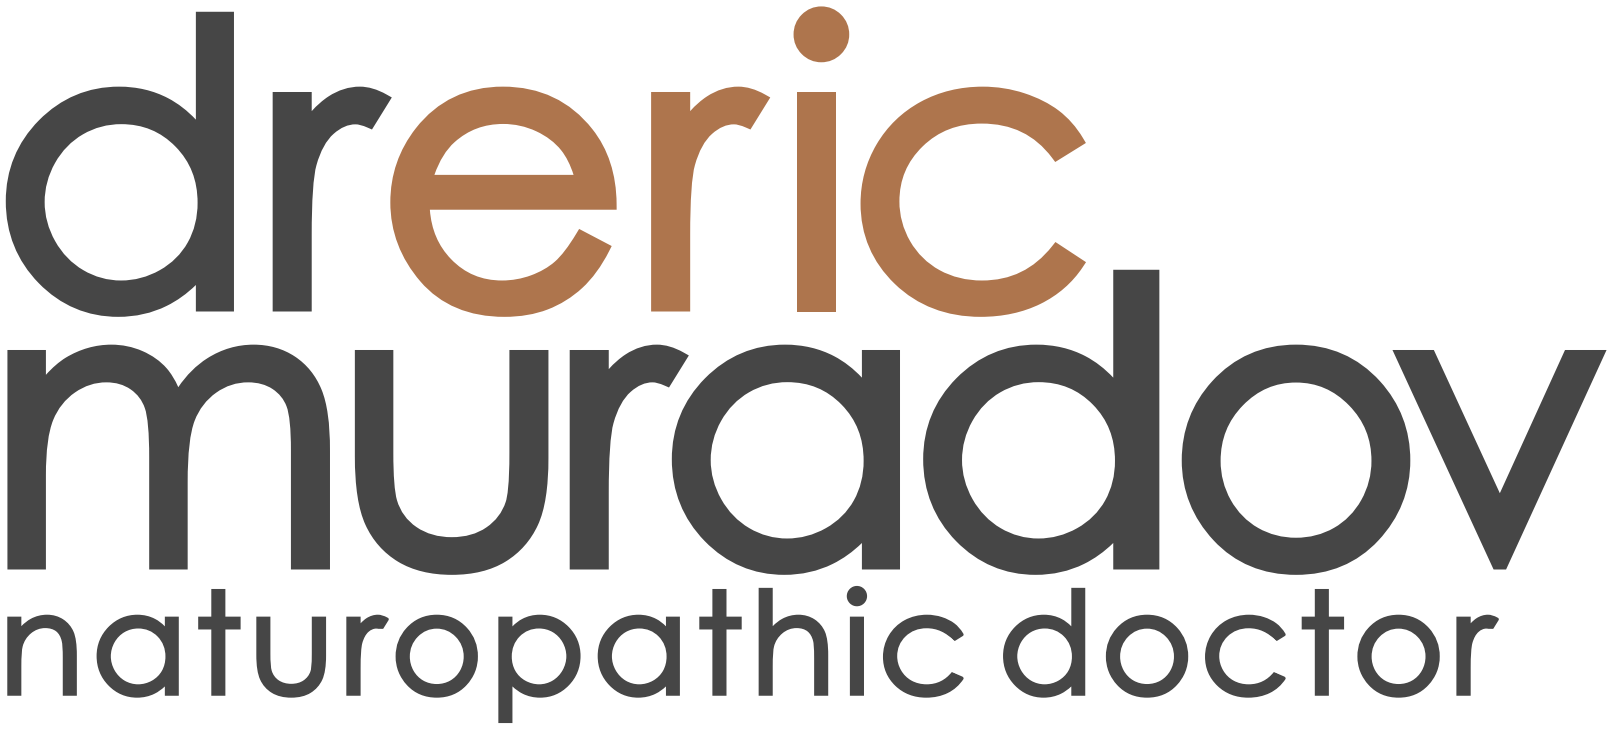 Dr Eric Muradov Naturopath Logo